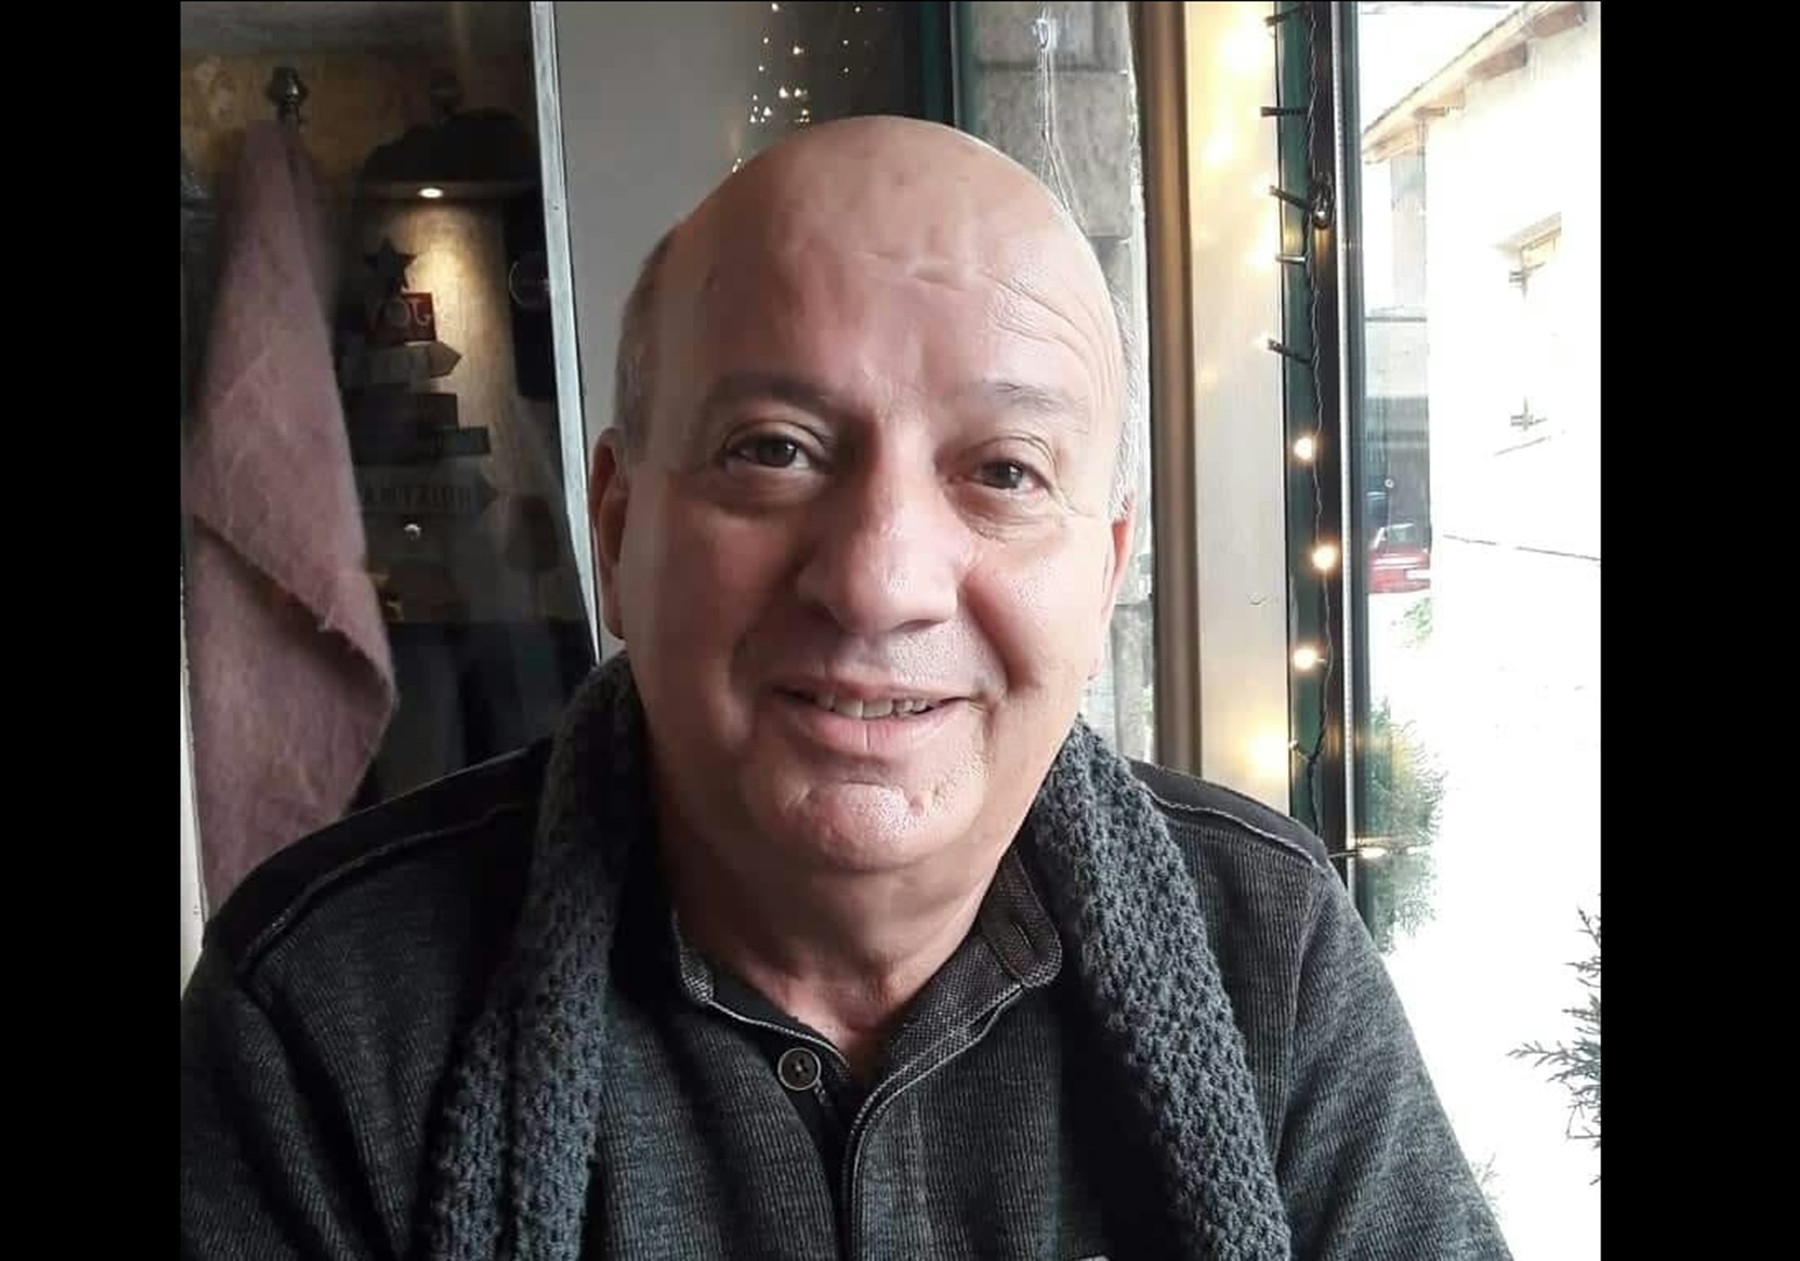 Κατερινόπουλος Θανάσης – Γλυκά Νερά: “Δέχομαι απειλές” καταγγέλλει ο απόστρατος ταξίαρχος